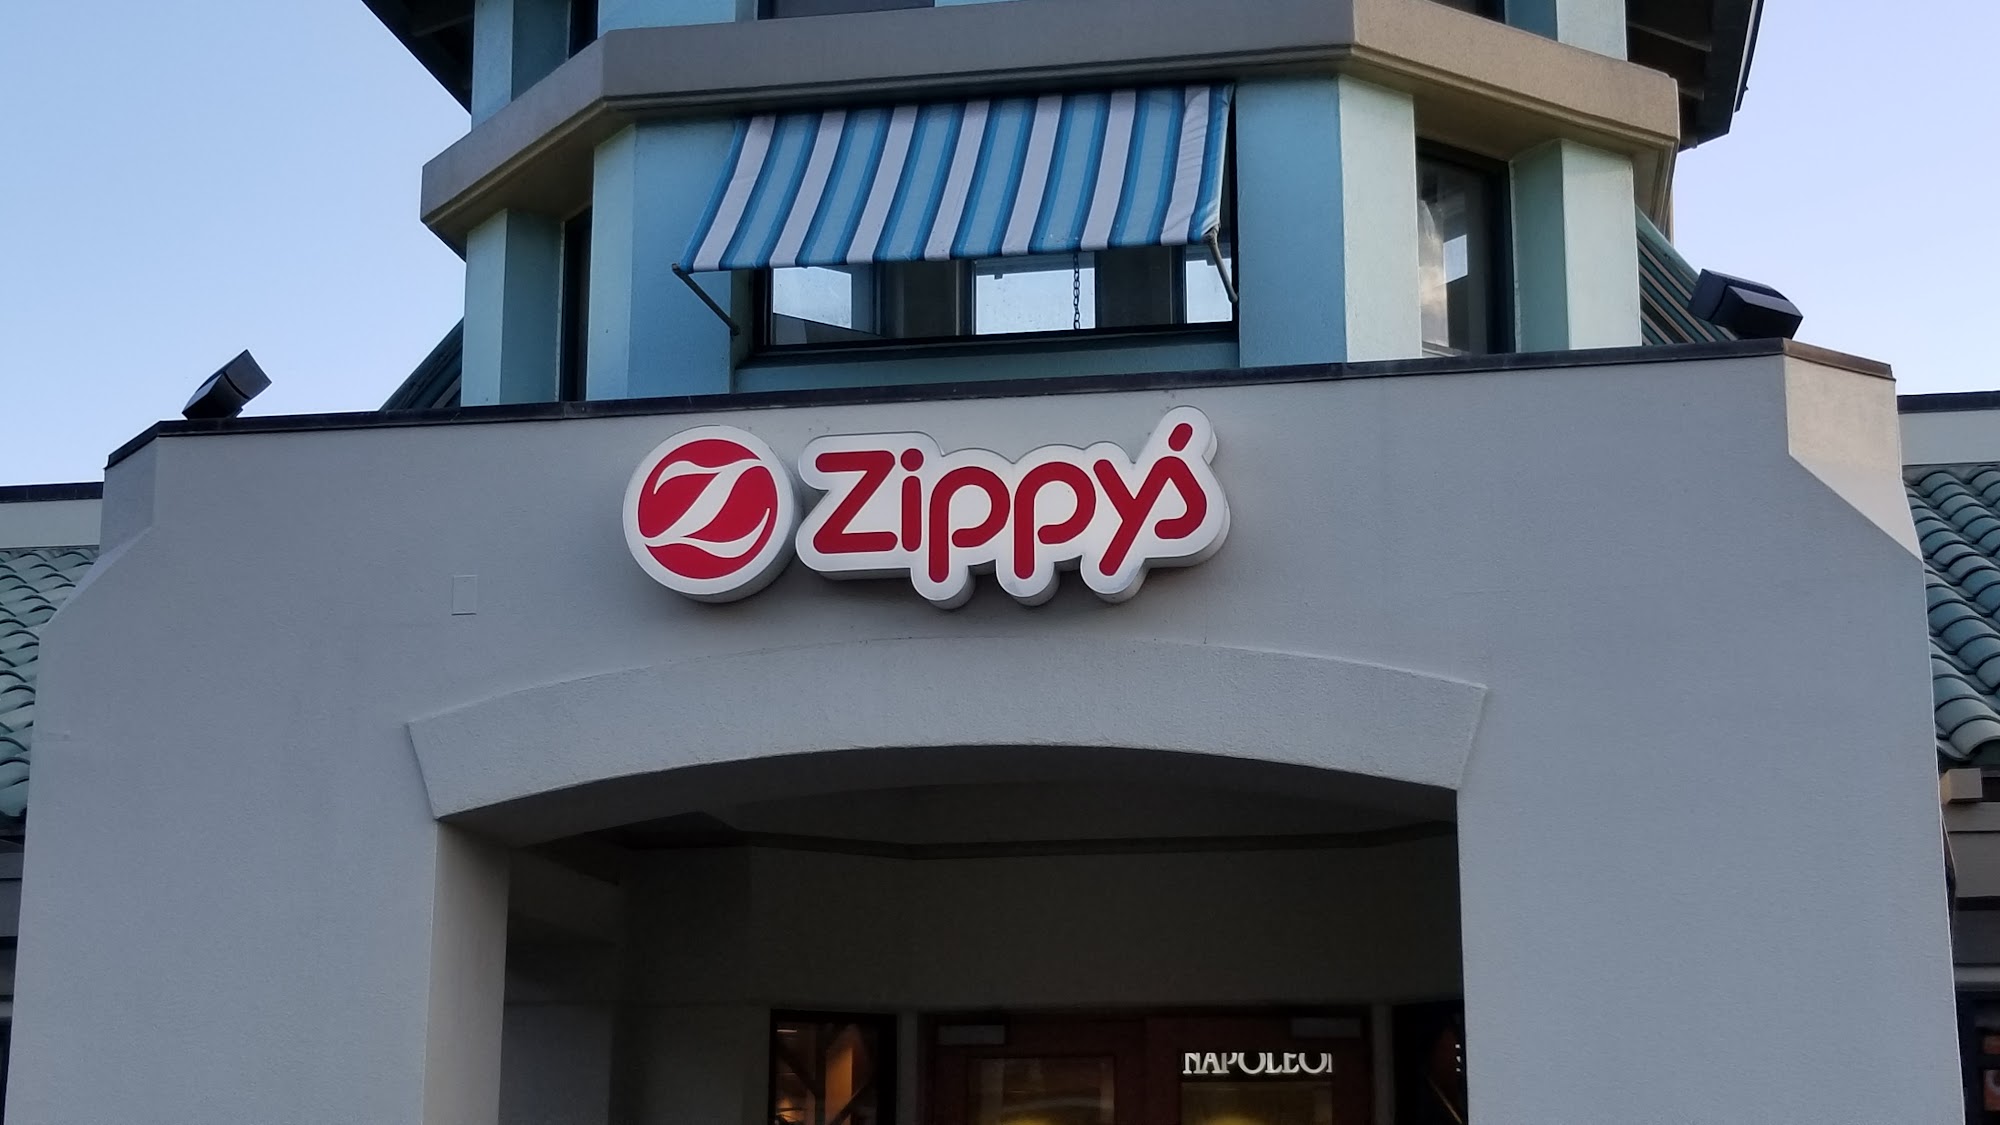 Zippy's Kapolei